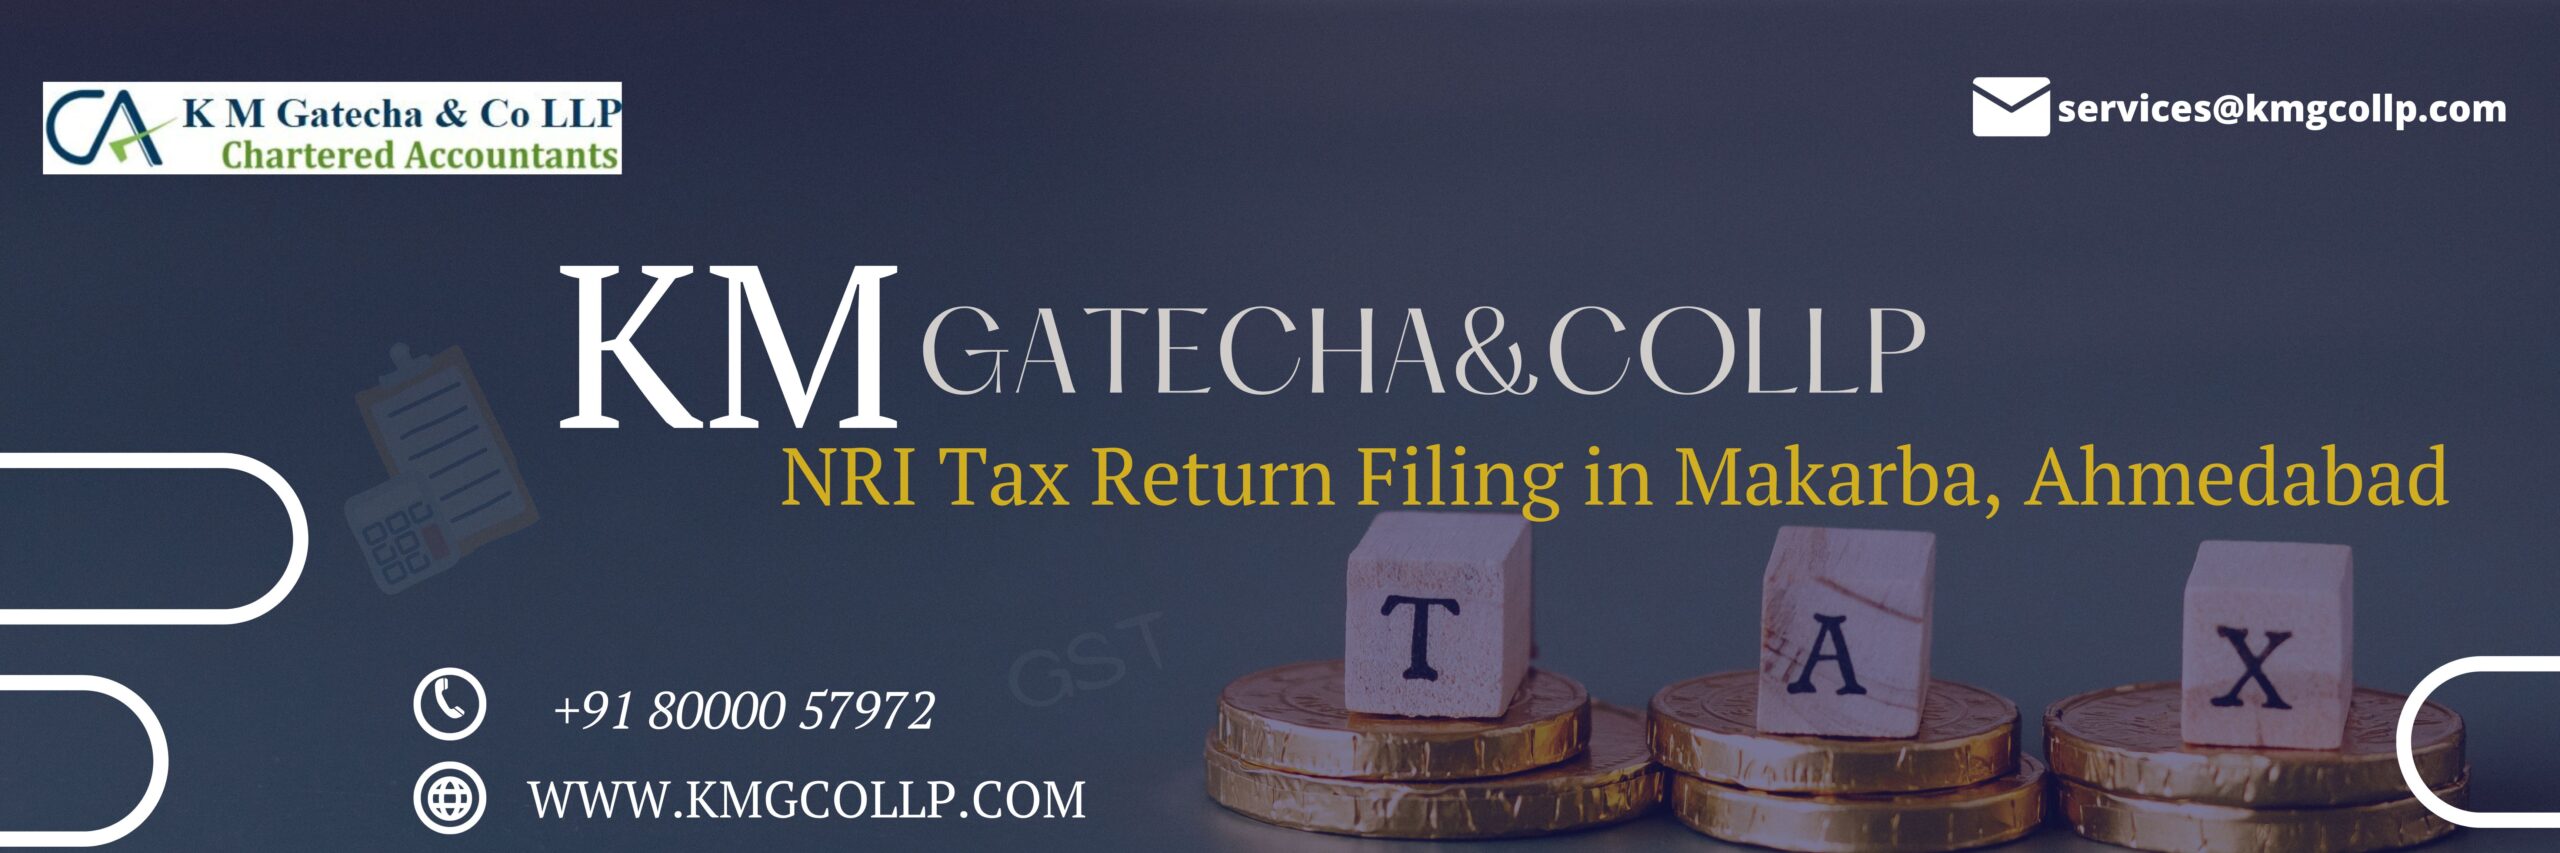 NRI Tax Return Filing in Makarba